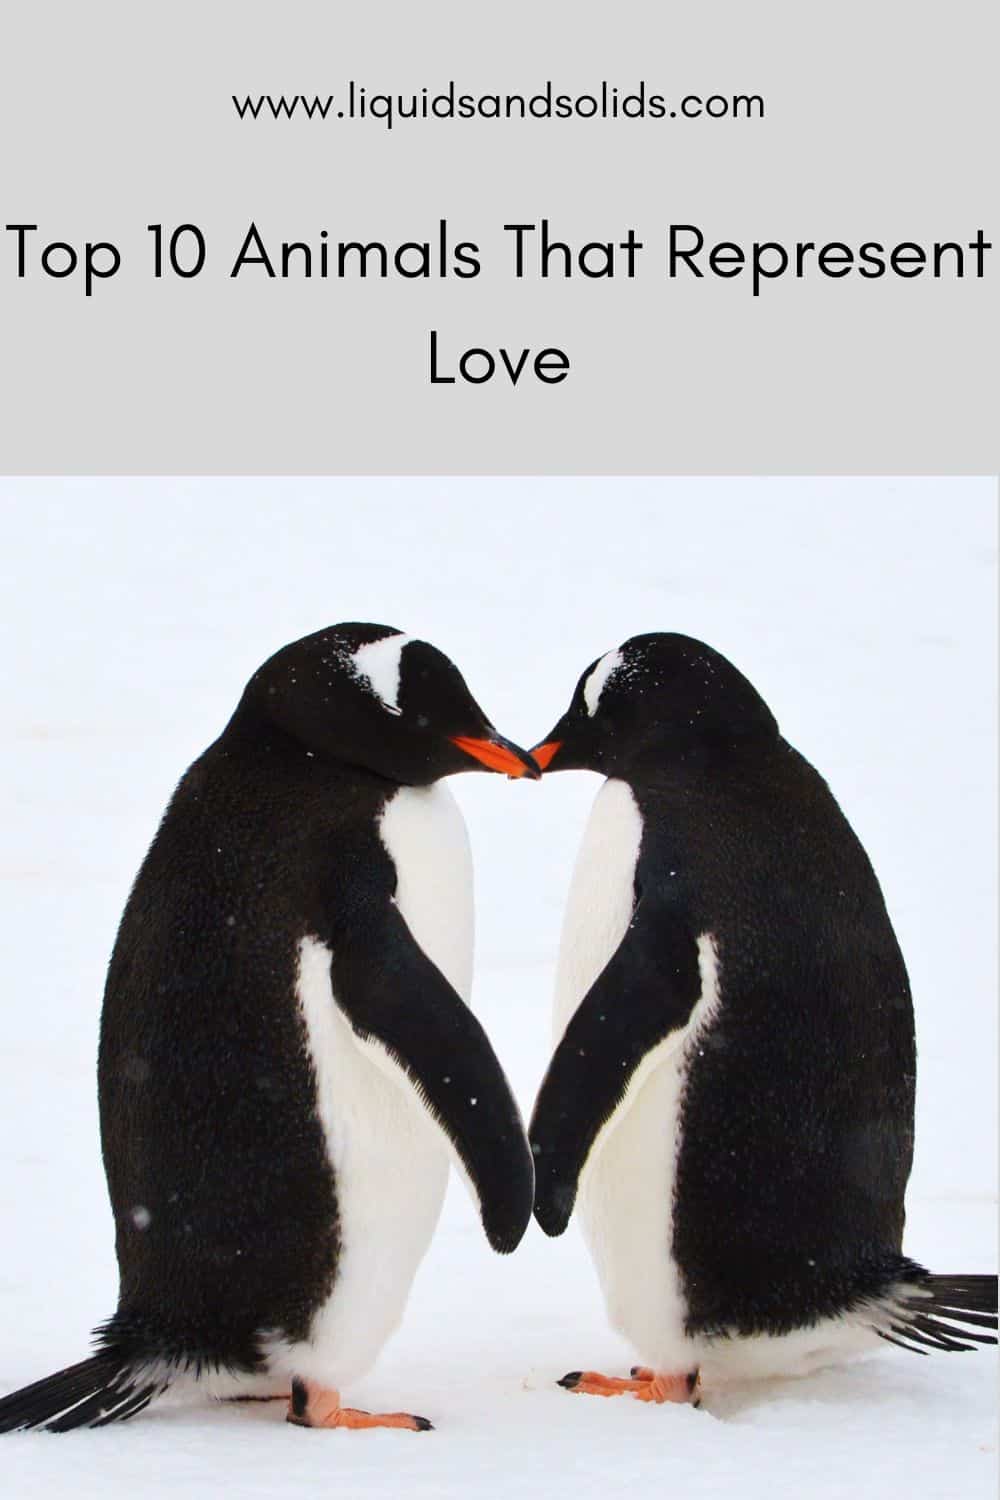  Top 10 des animaux qui représentent l'amour